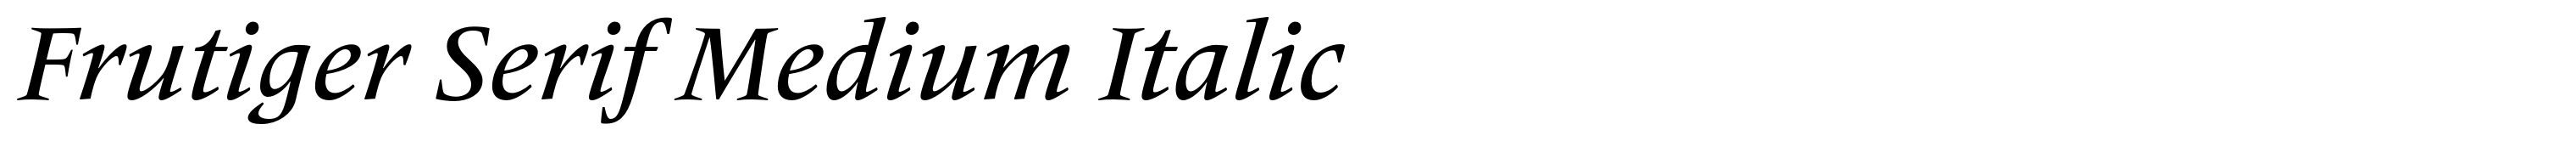 Frutiger Serif Medium Italic